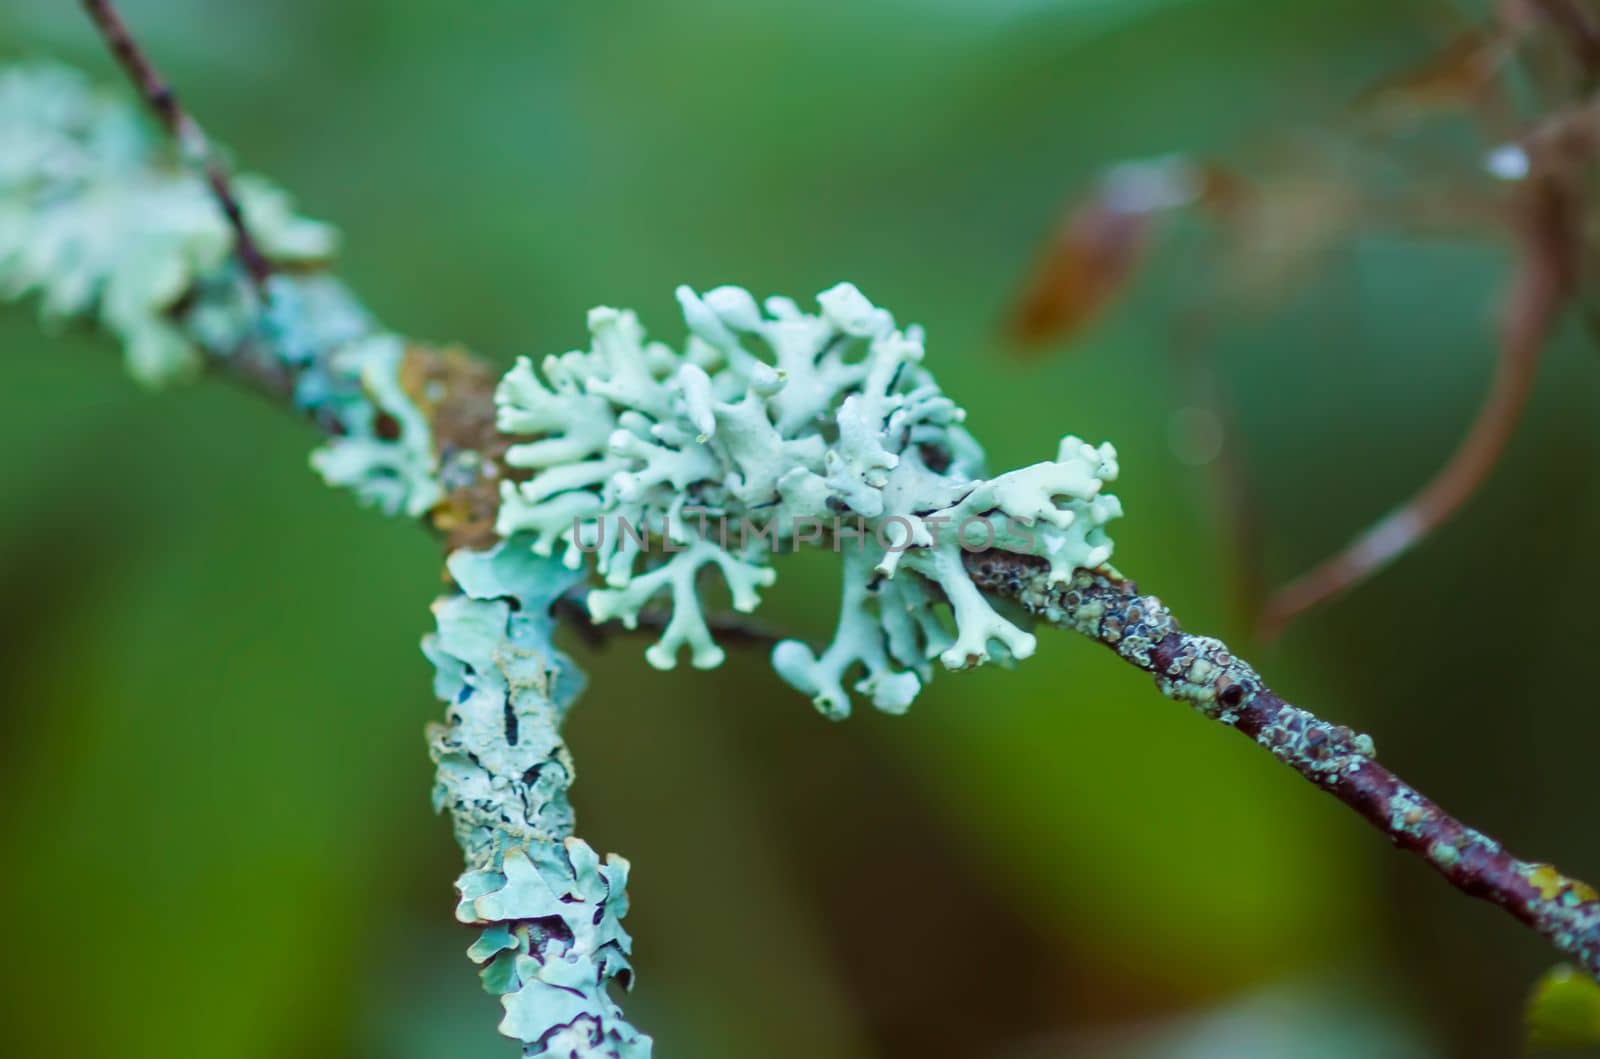 Lichen texture on tree branch.